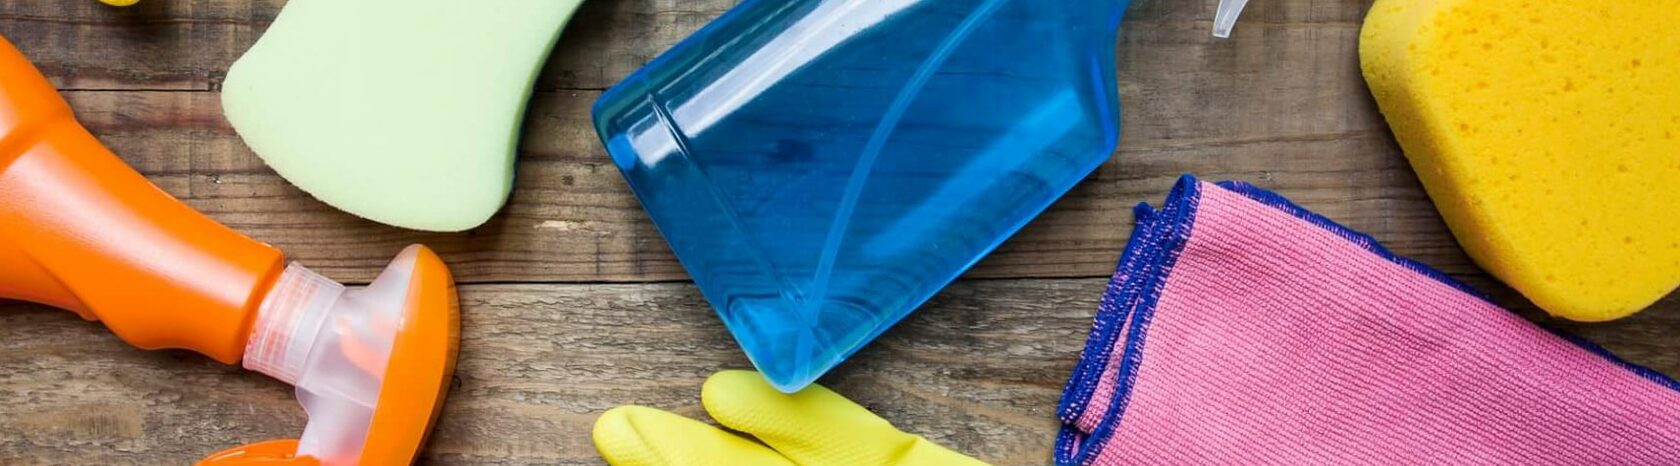 Соления в пластиковых емкостях: 5 простых проверенных рецептов